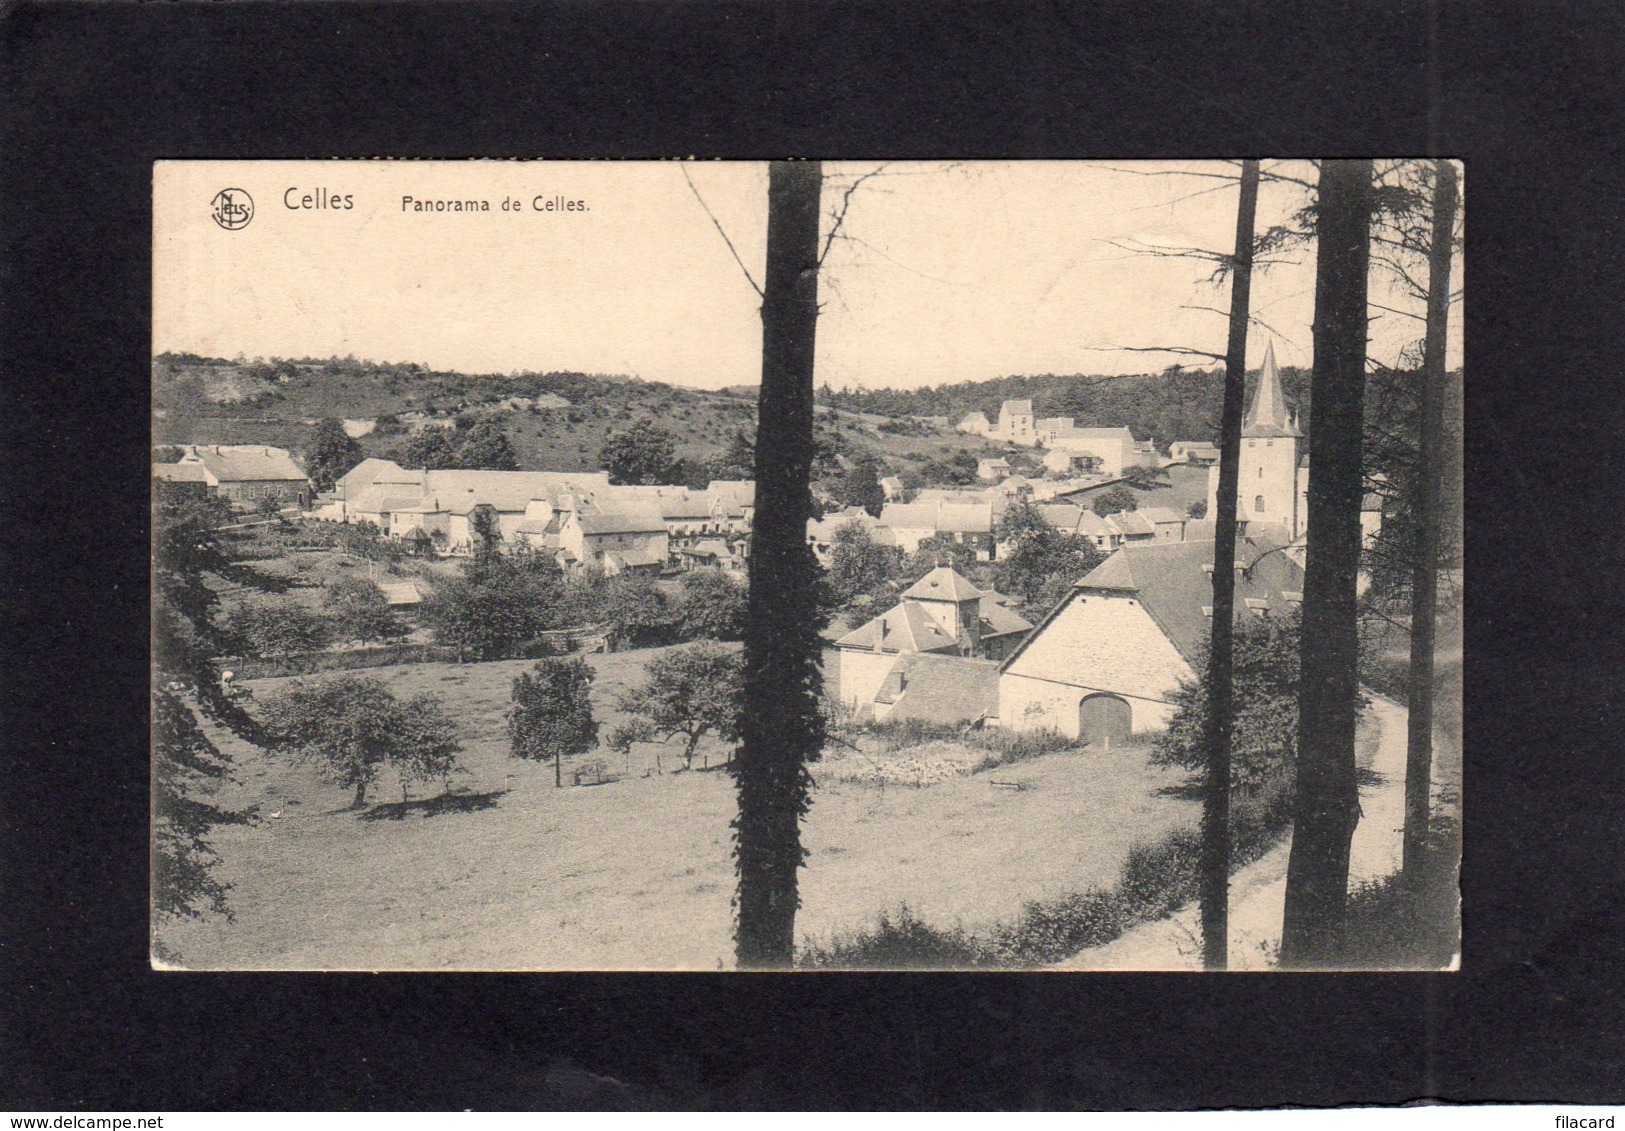 94971    Belgio,   Celles,  Panorama De Celles,  VG  1923 - Celles